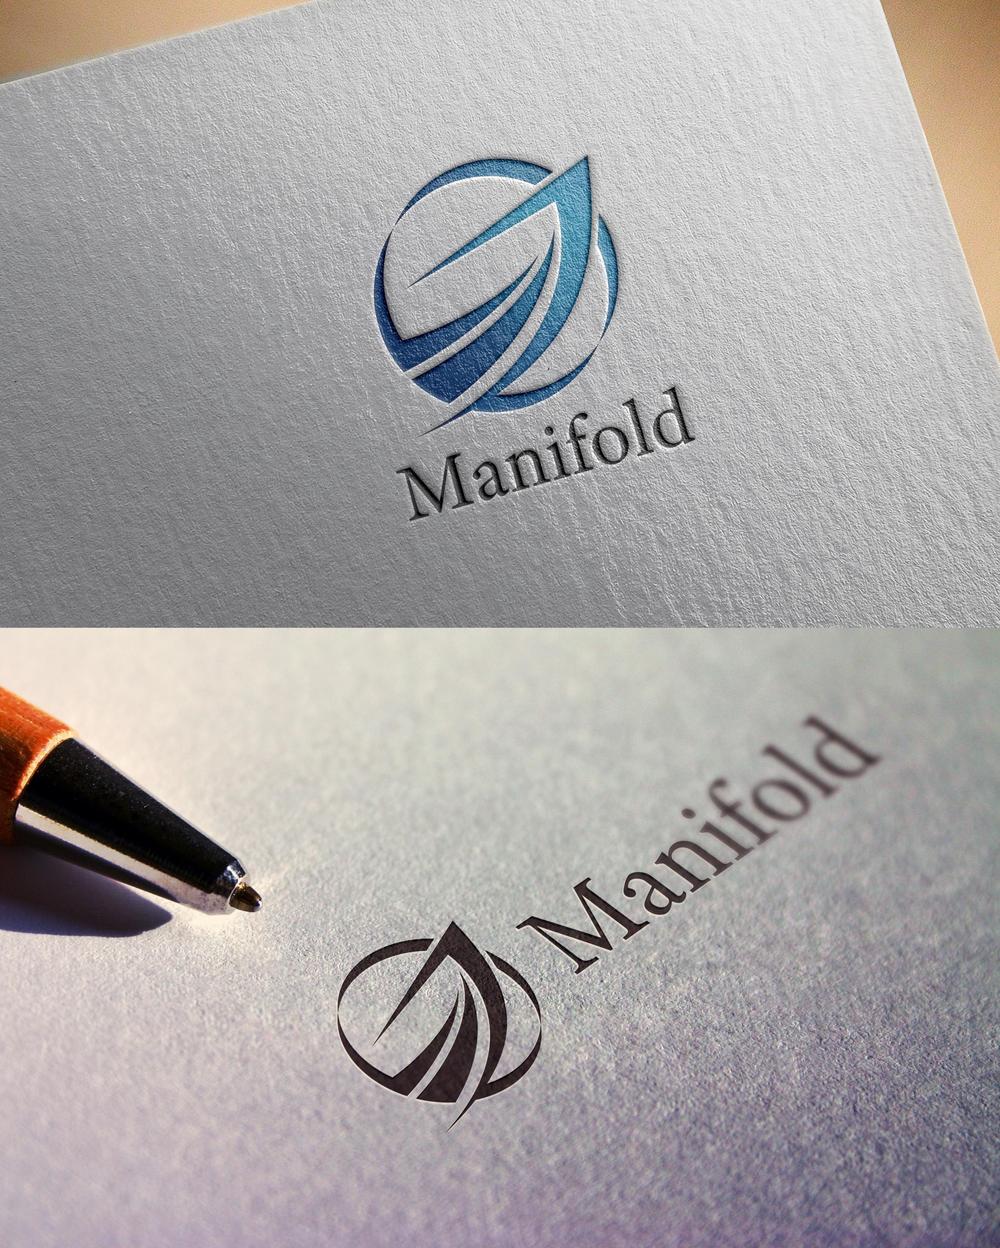 新設法人「マニフォールド株式会社」のロゴ